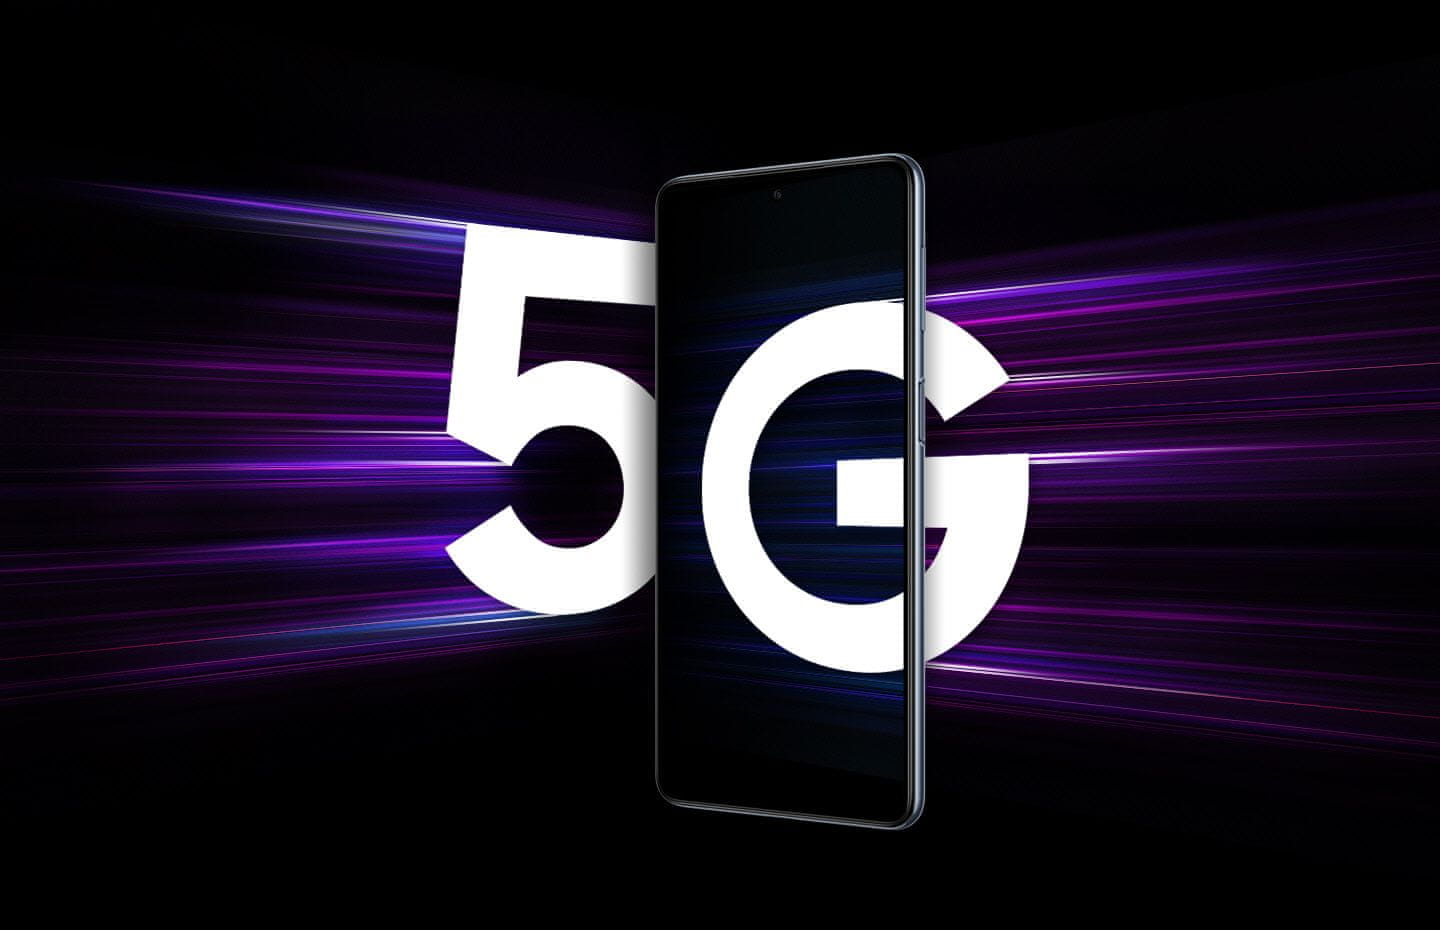 Samsung Galaxy M53 5G, telefon chytrý výkonný telefon smarphone FHD+ rozlišení 120Hz obnovovací frekvence výkonný smartphone Qualcomm Snapdragon 5G připojení nejrychlejší připojení nejrychlejší síť 5G datové připojení bleskový internet